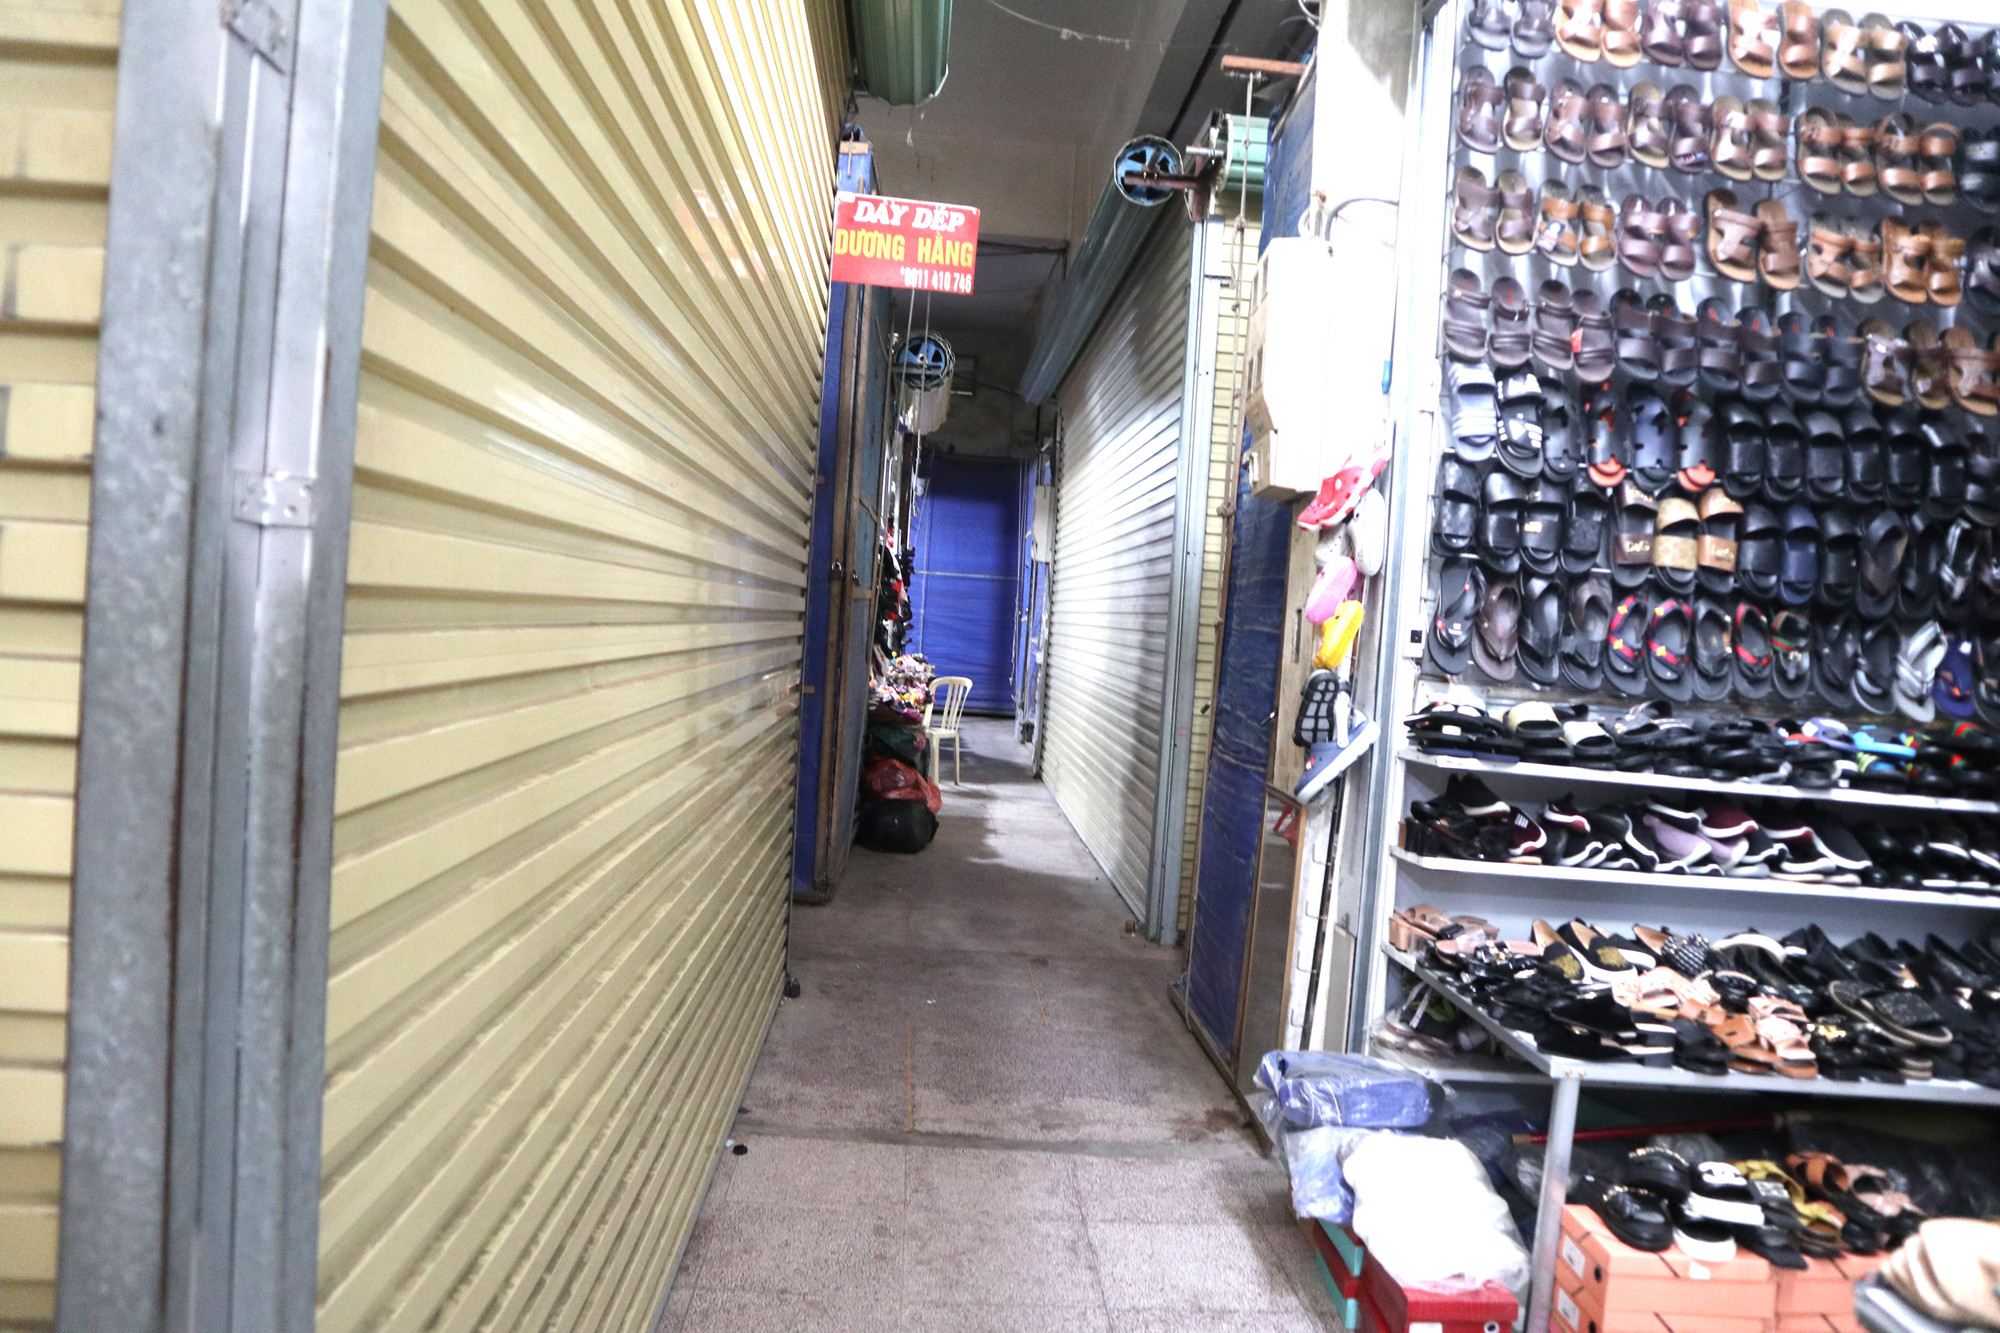 800/1.700 ki -ốt ở chợ Ga Vinh buộc phải đóng cửa do kinh doanh ế ẩm, tiểu thương thua lỗ. Ảnh: Thanh Phúc